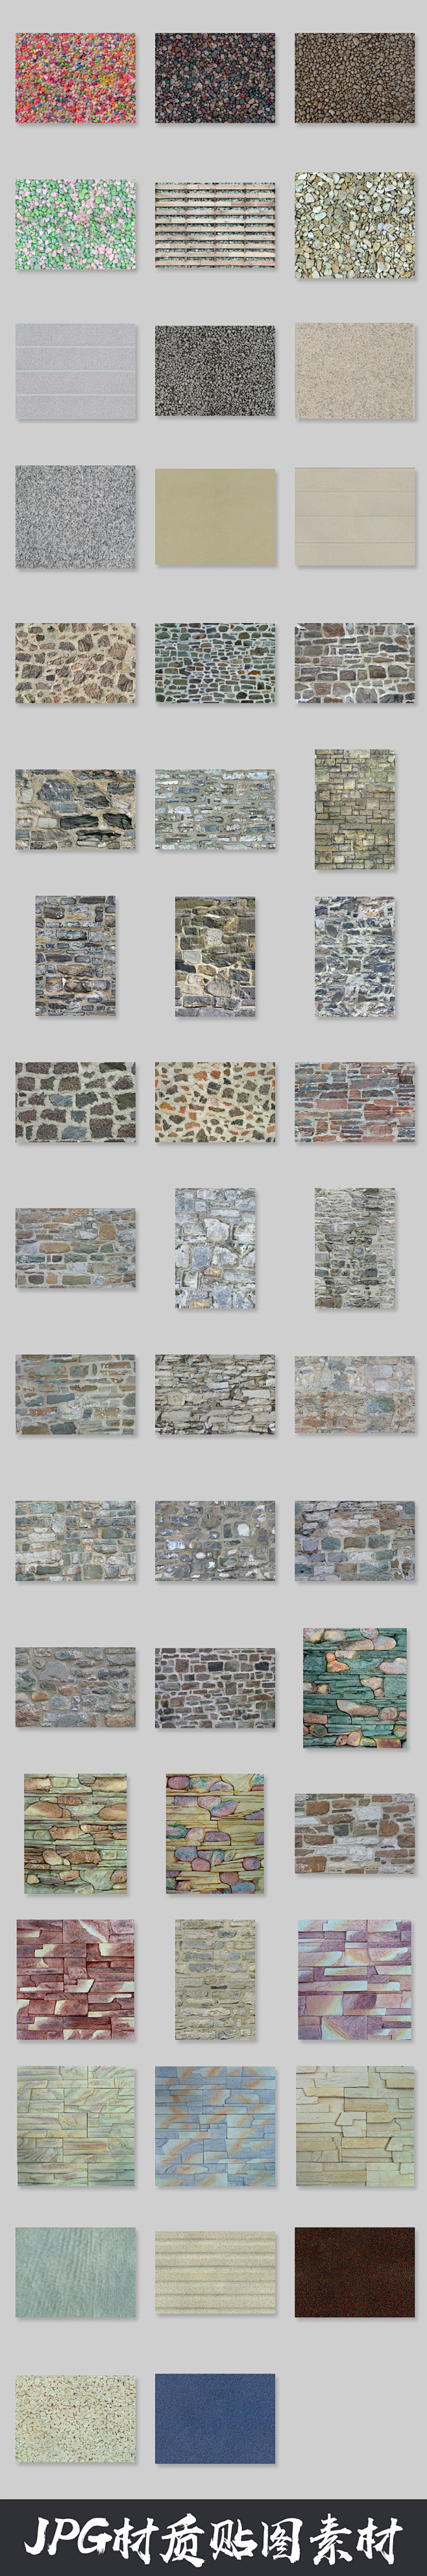 鹅卵石墙面地面砖墙jpg材质贴图素材